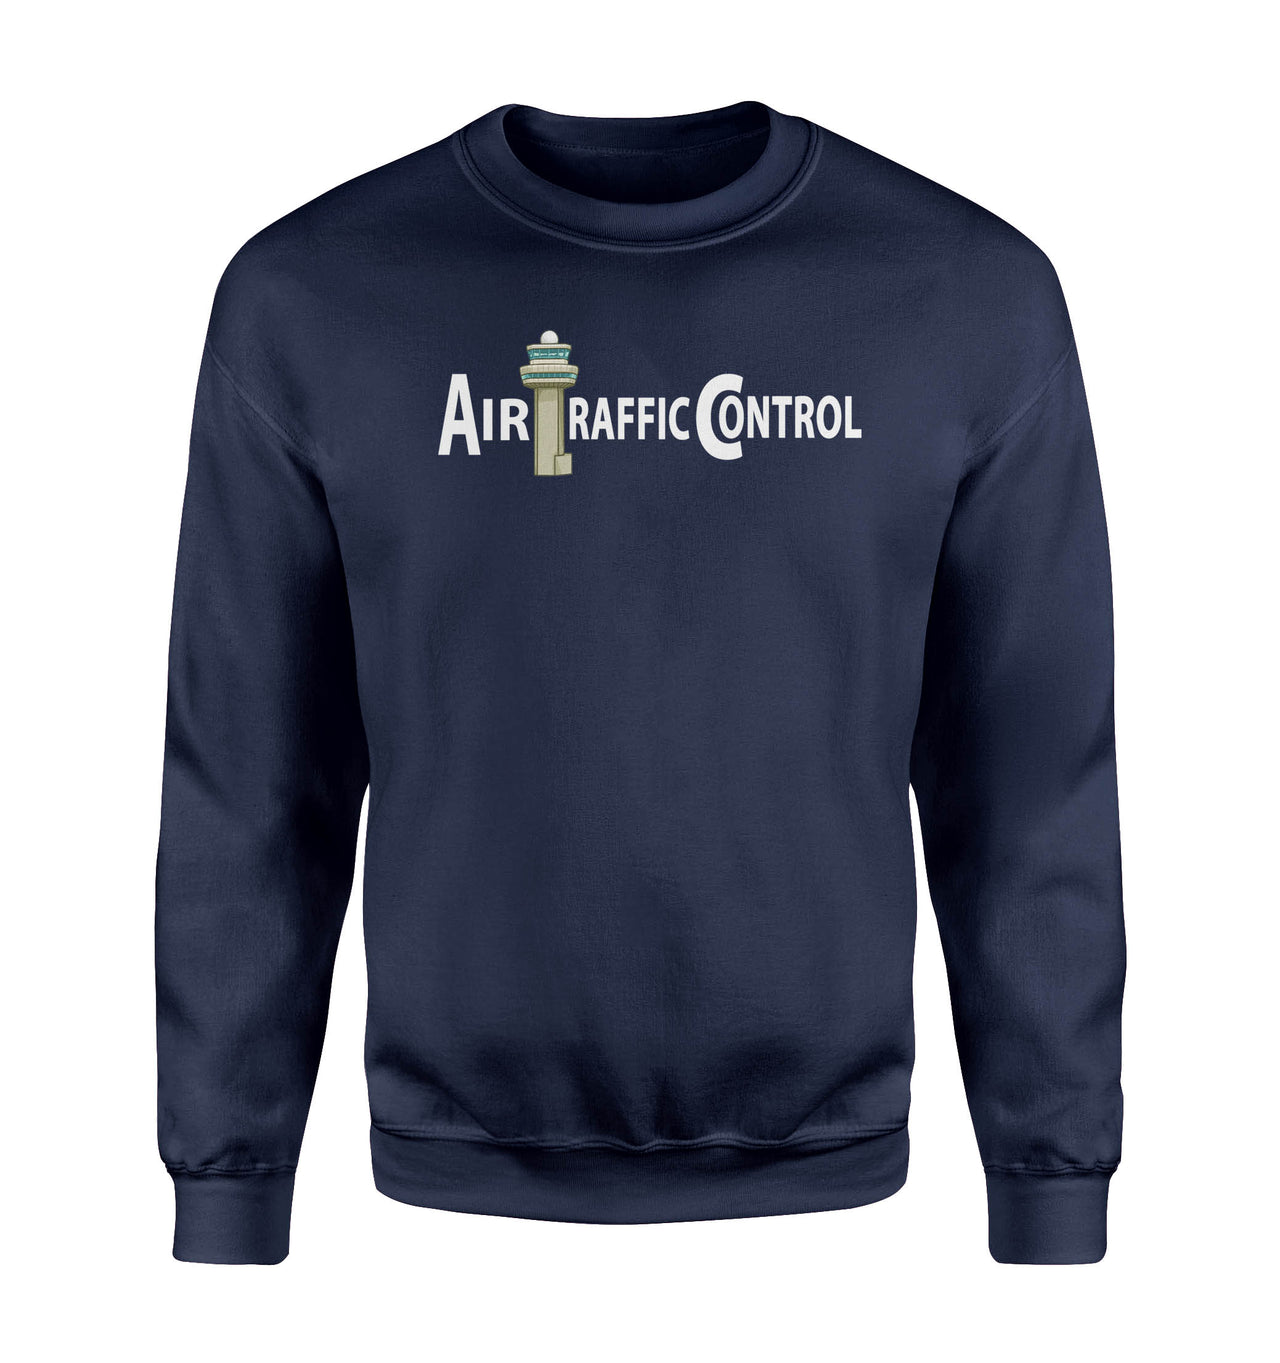 Air Traffic Control Designed Sweatshirts